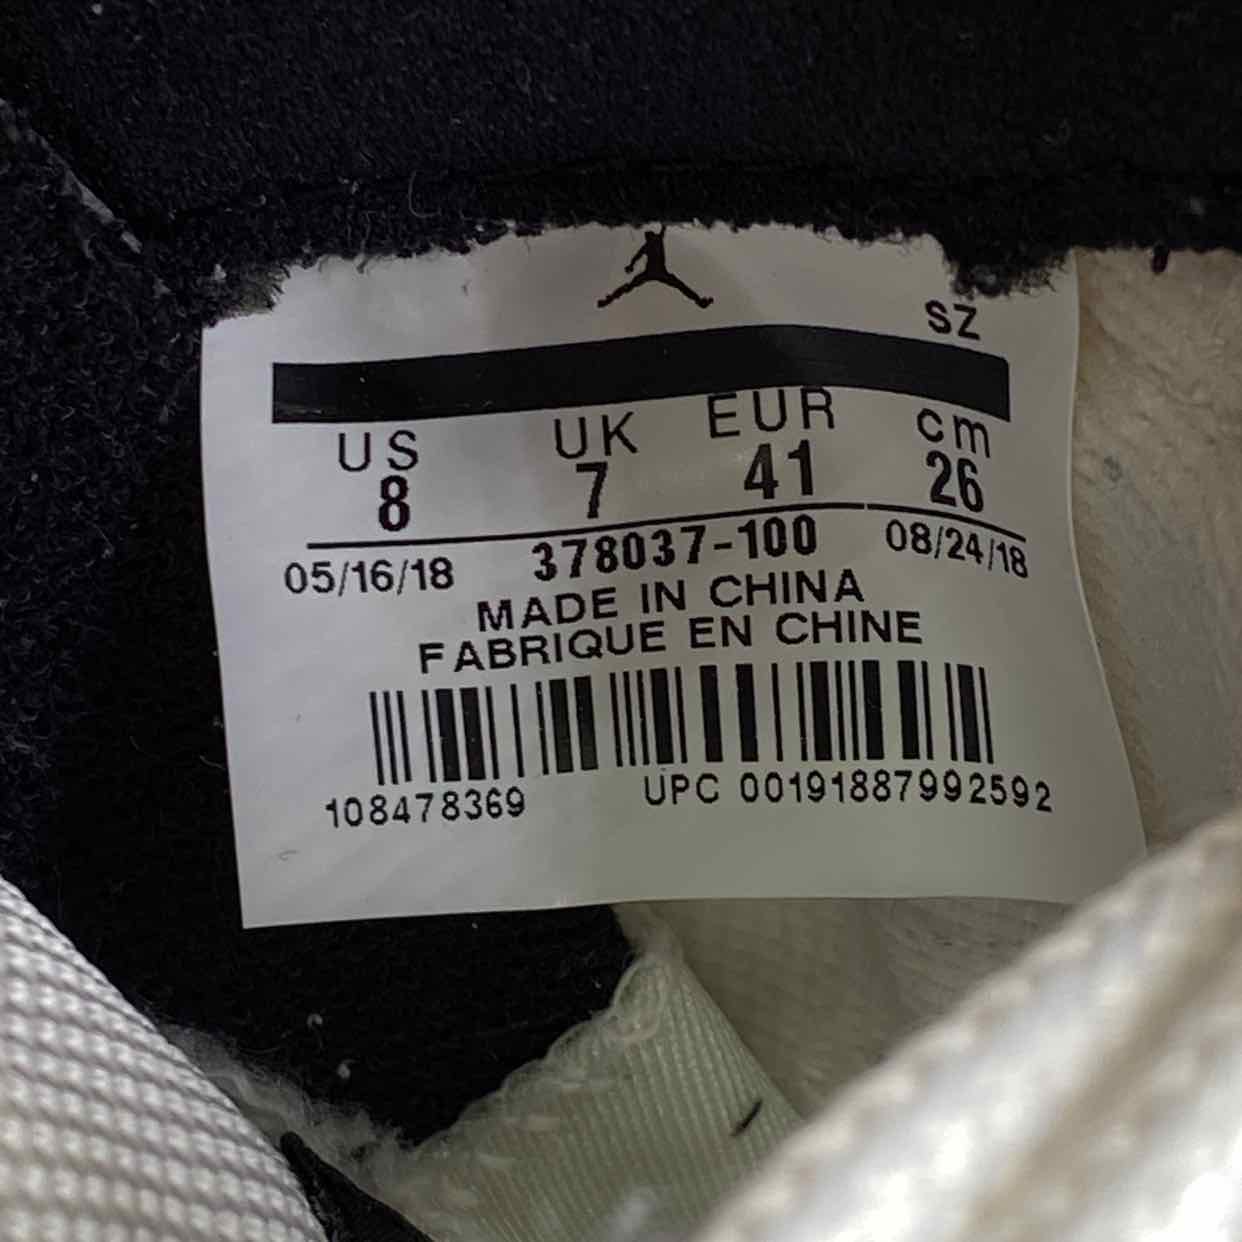 Air Jordan 11 Retro &quot;Concord&quot; 2018 Used Size 8